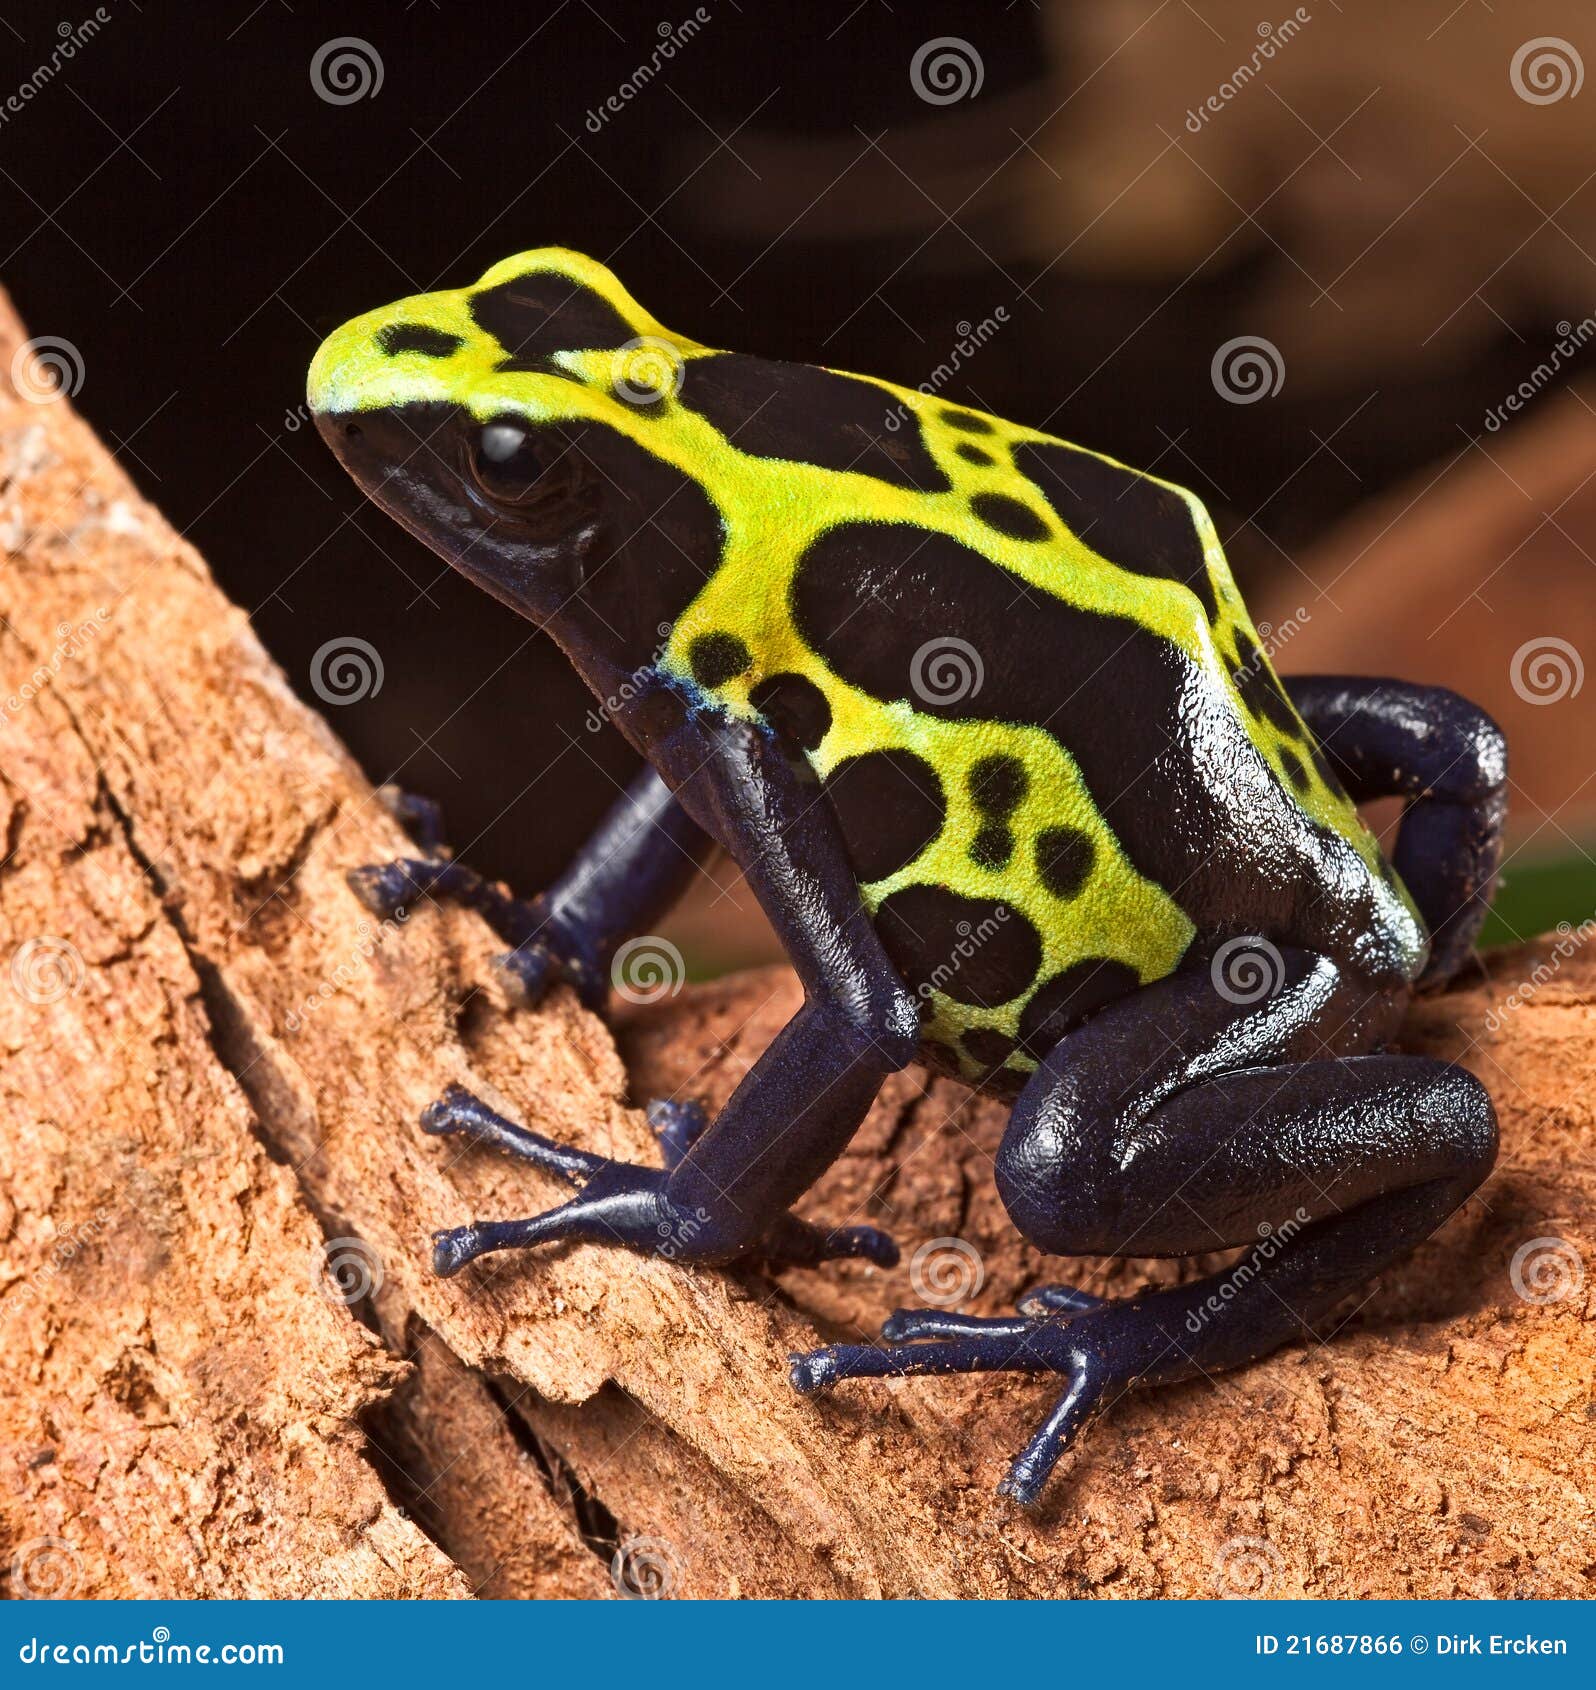 poison dart frog poisonous animal